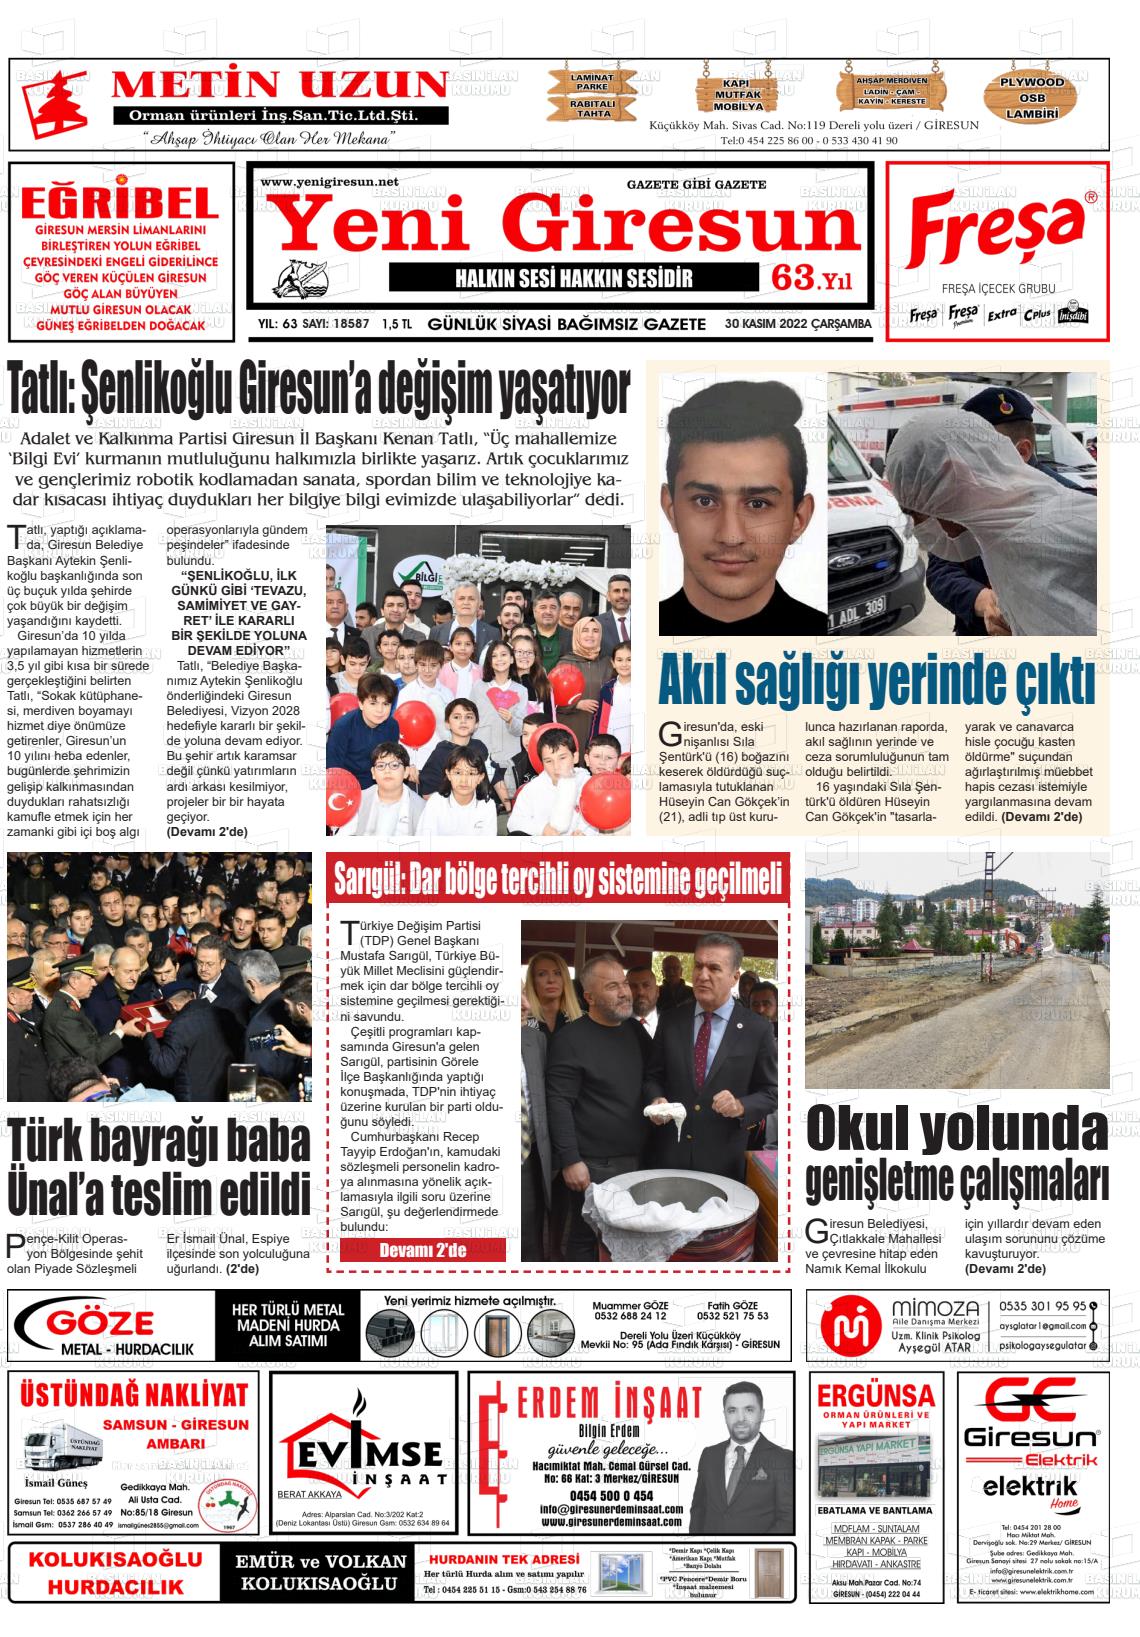 30 Kasım 2022 Yeni Giresun Gazete Manşeti